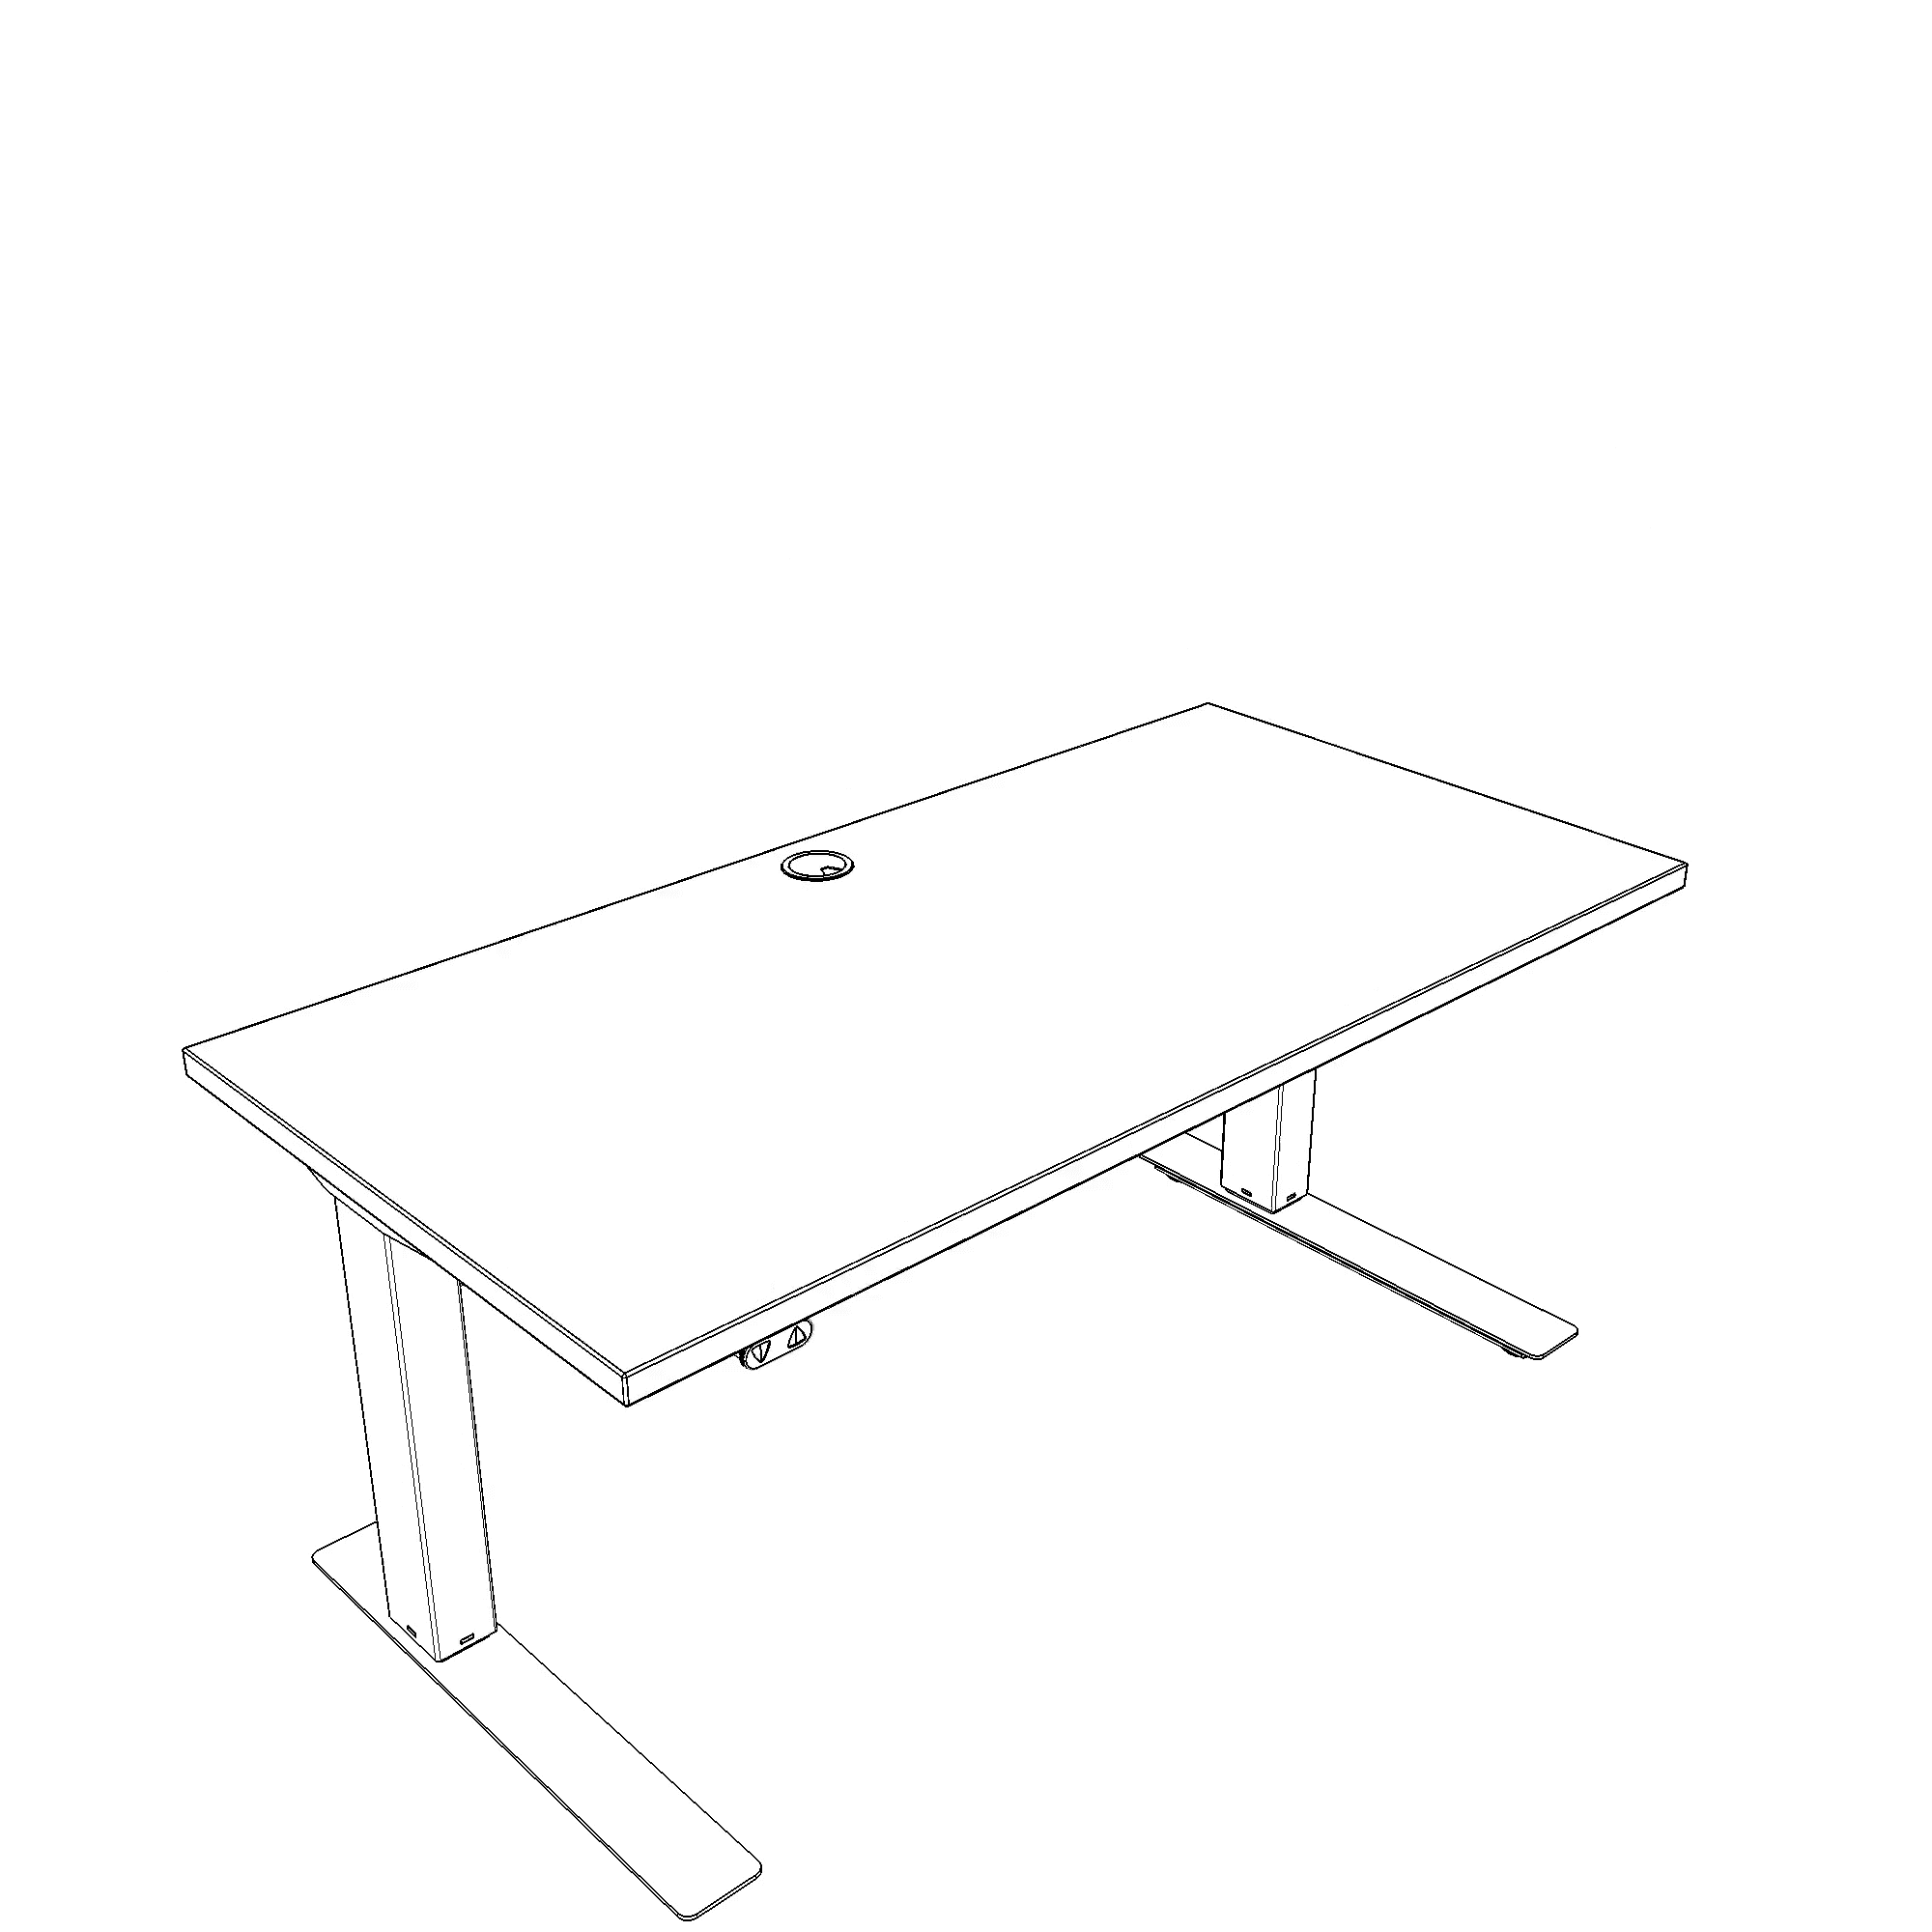 Elektrisch verstelbaar bureau | 120x60 cm | Wit met zwart frame